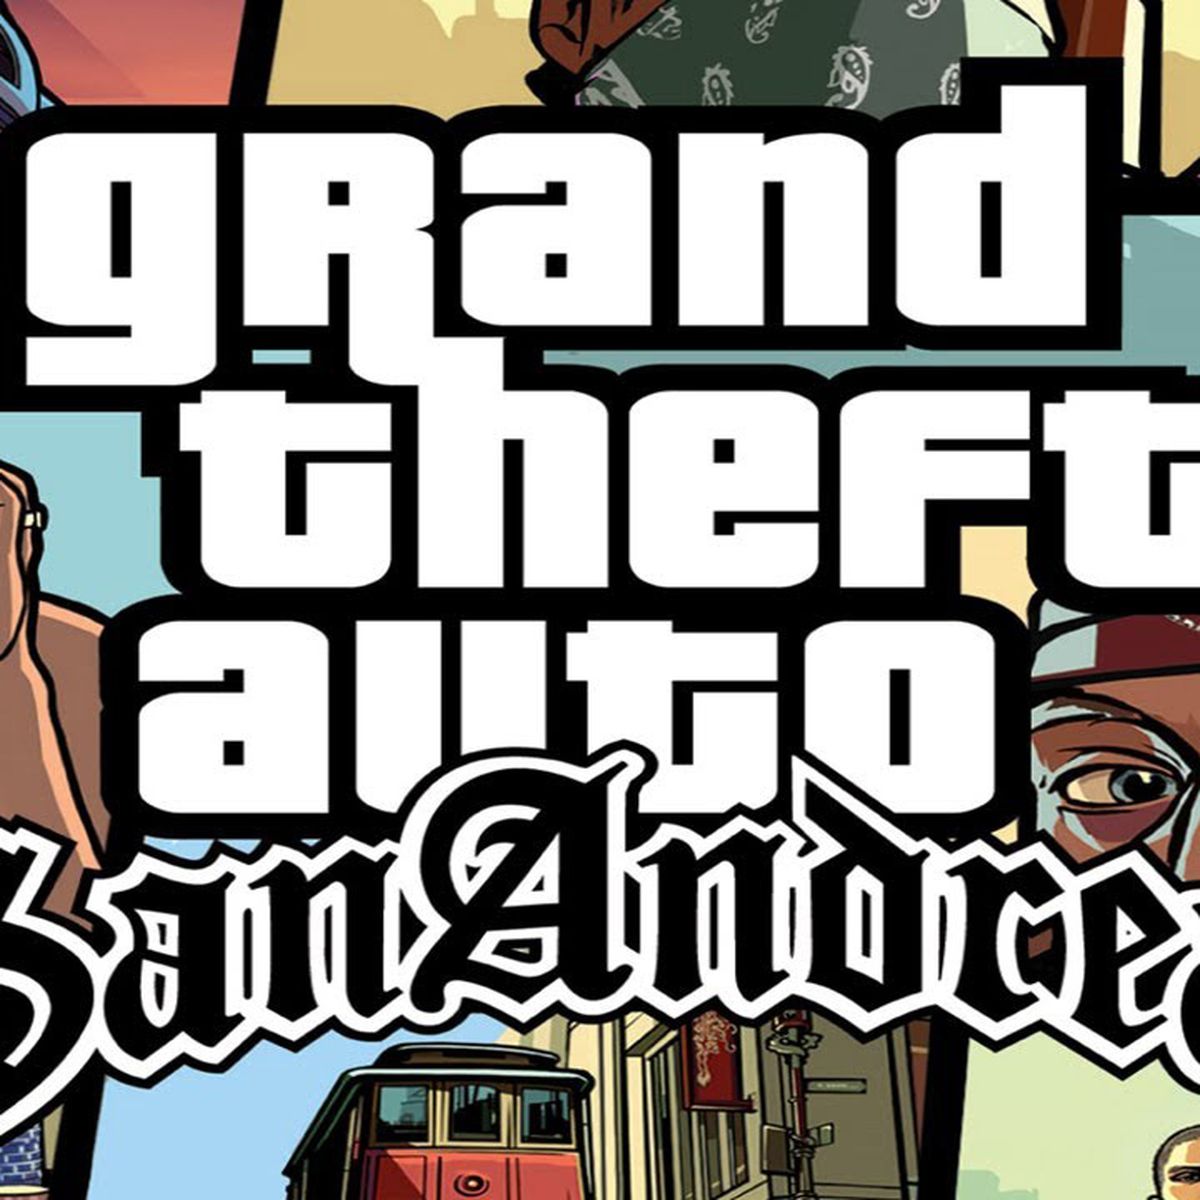 GTA San Andreas para PS2: trucos para vehículos, vida infinita, armas y más